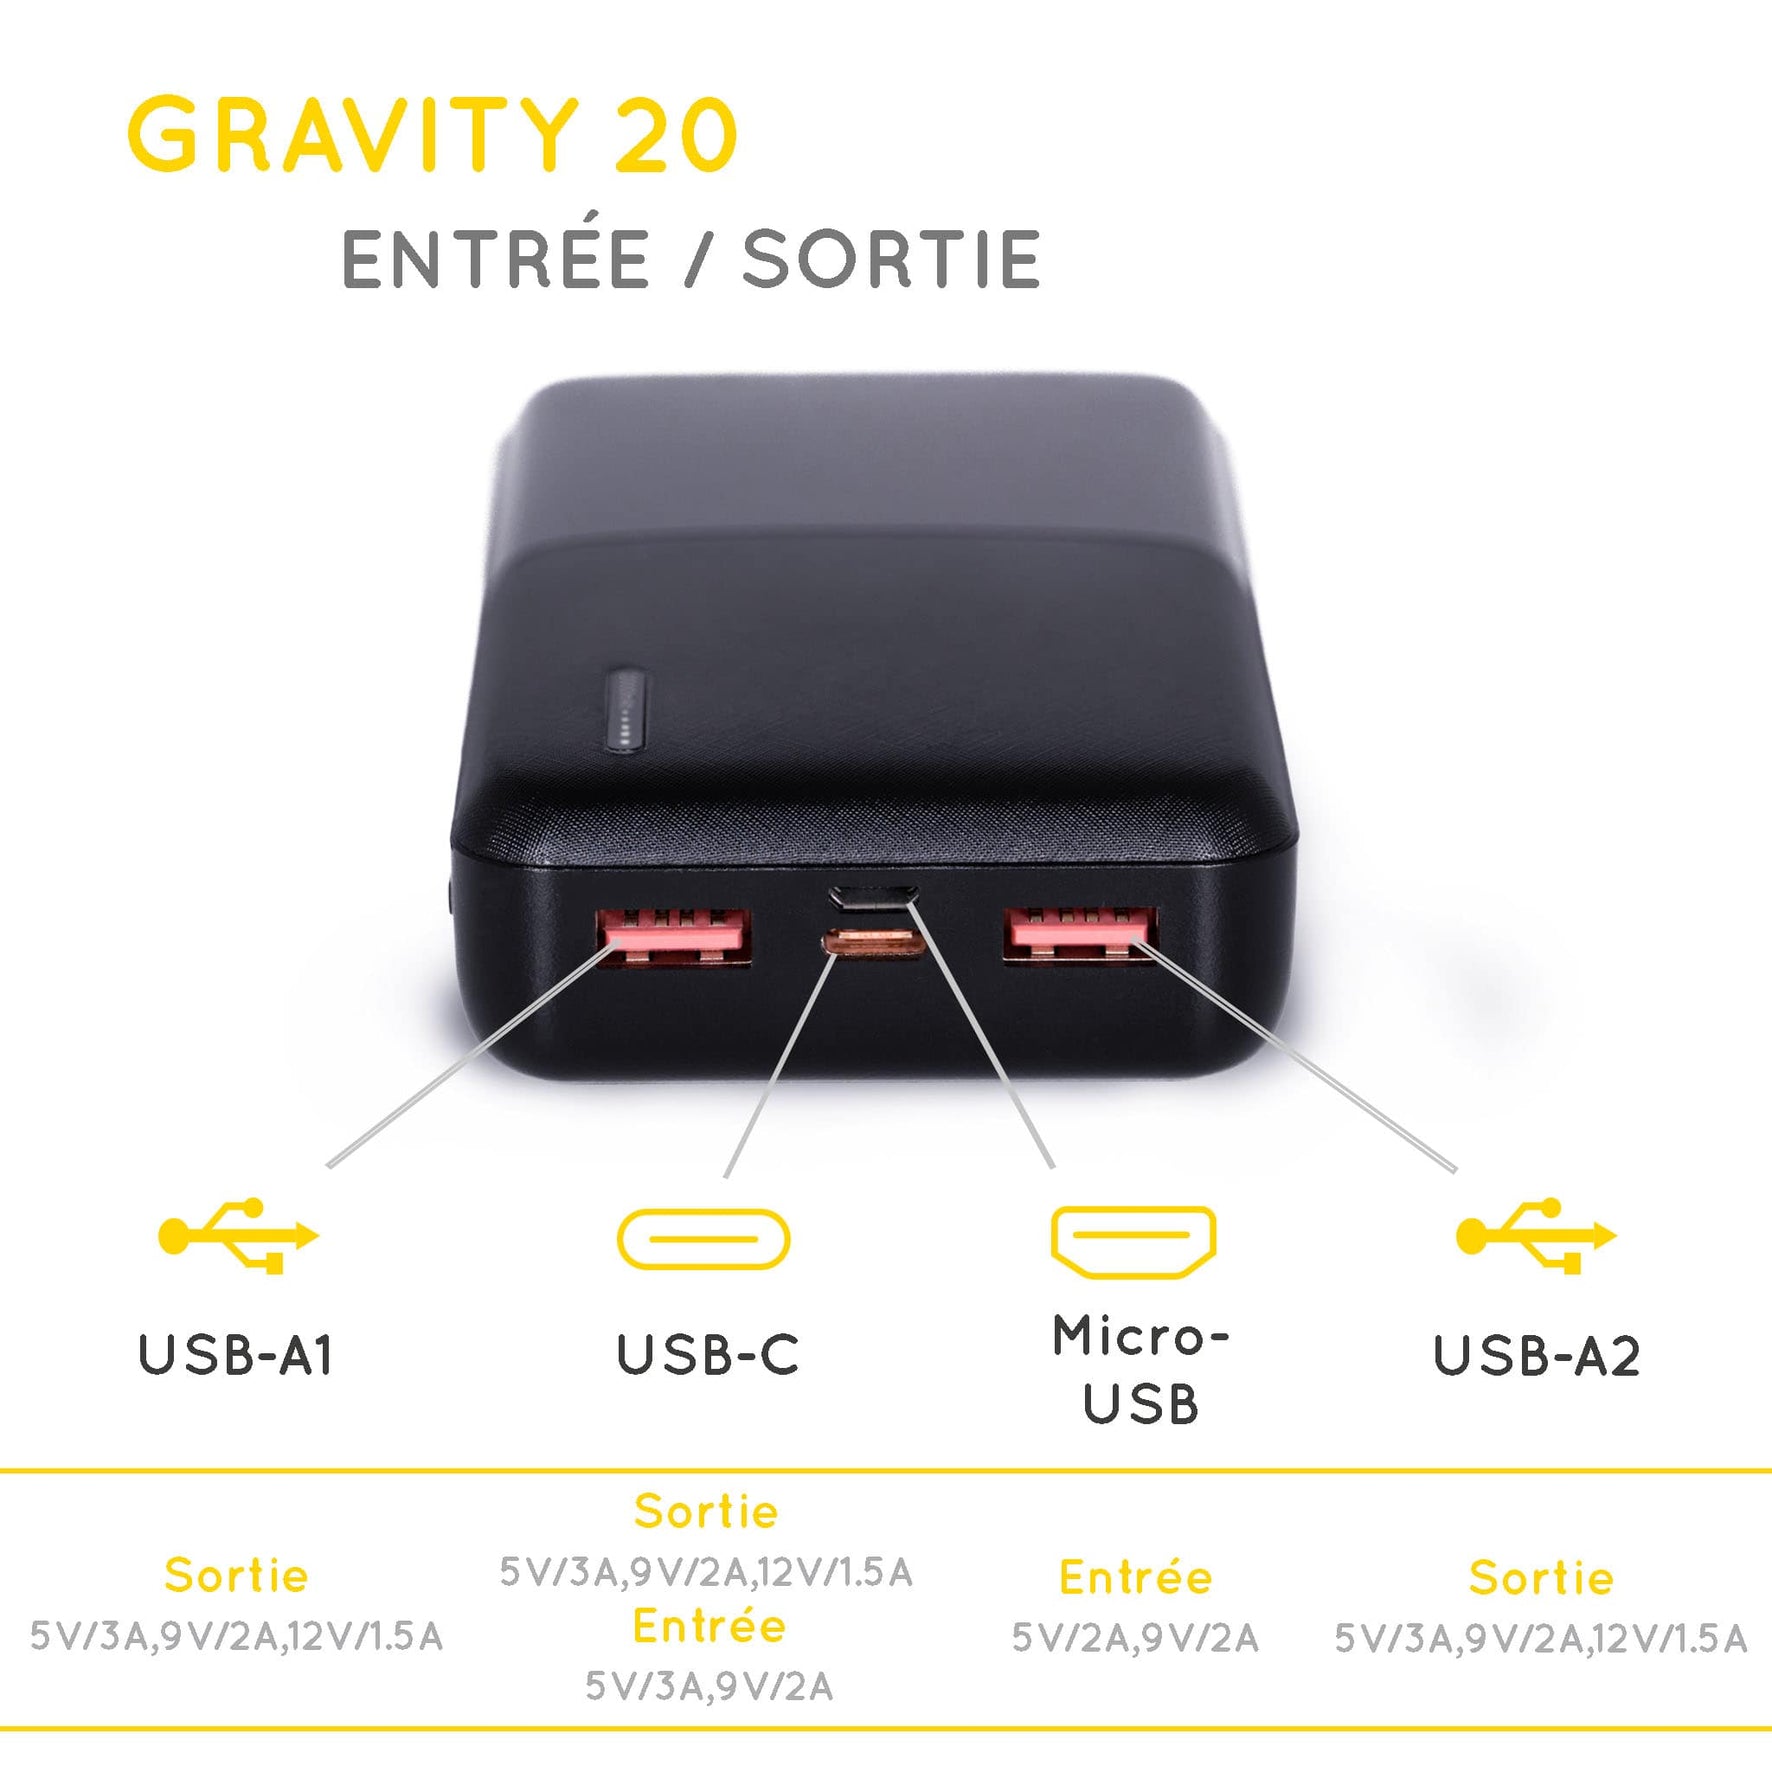 power bank Gravity 20 explication des sorties et entrées : 2 x USB-A, USB-C, Micro-USB